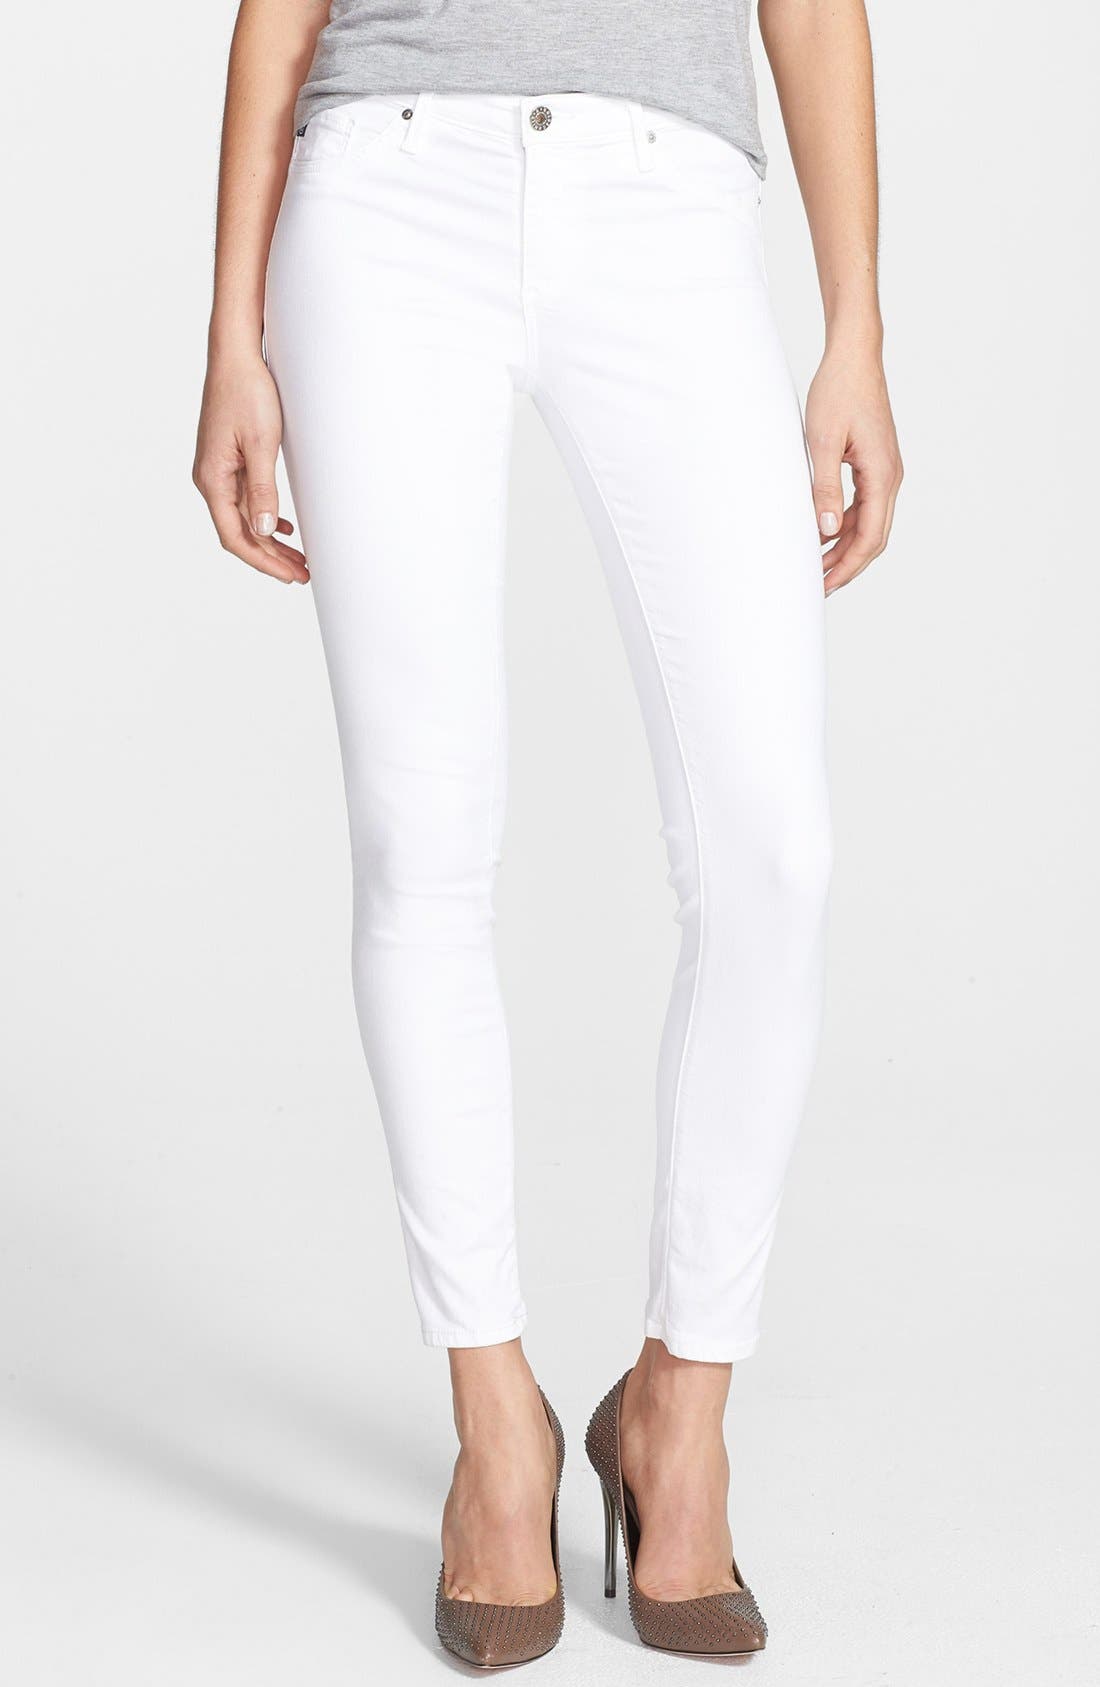 ag white jeans